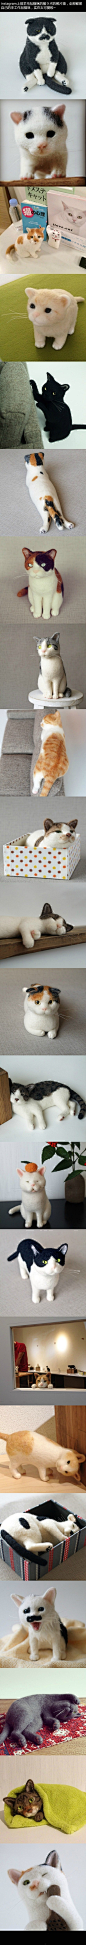 一位叫做猫ラボ的人做的羊毛毡猫，每一只造型都不同，超级可爱！！！！